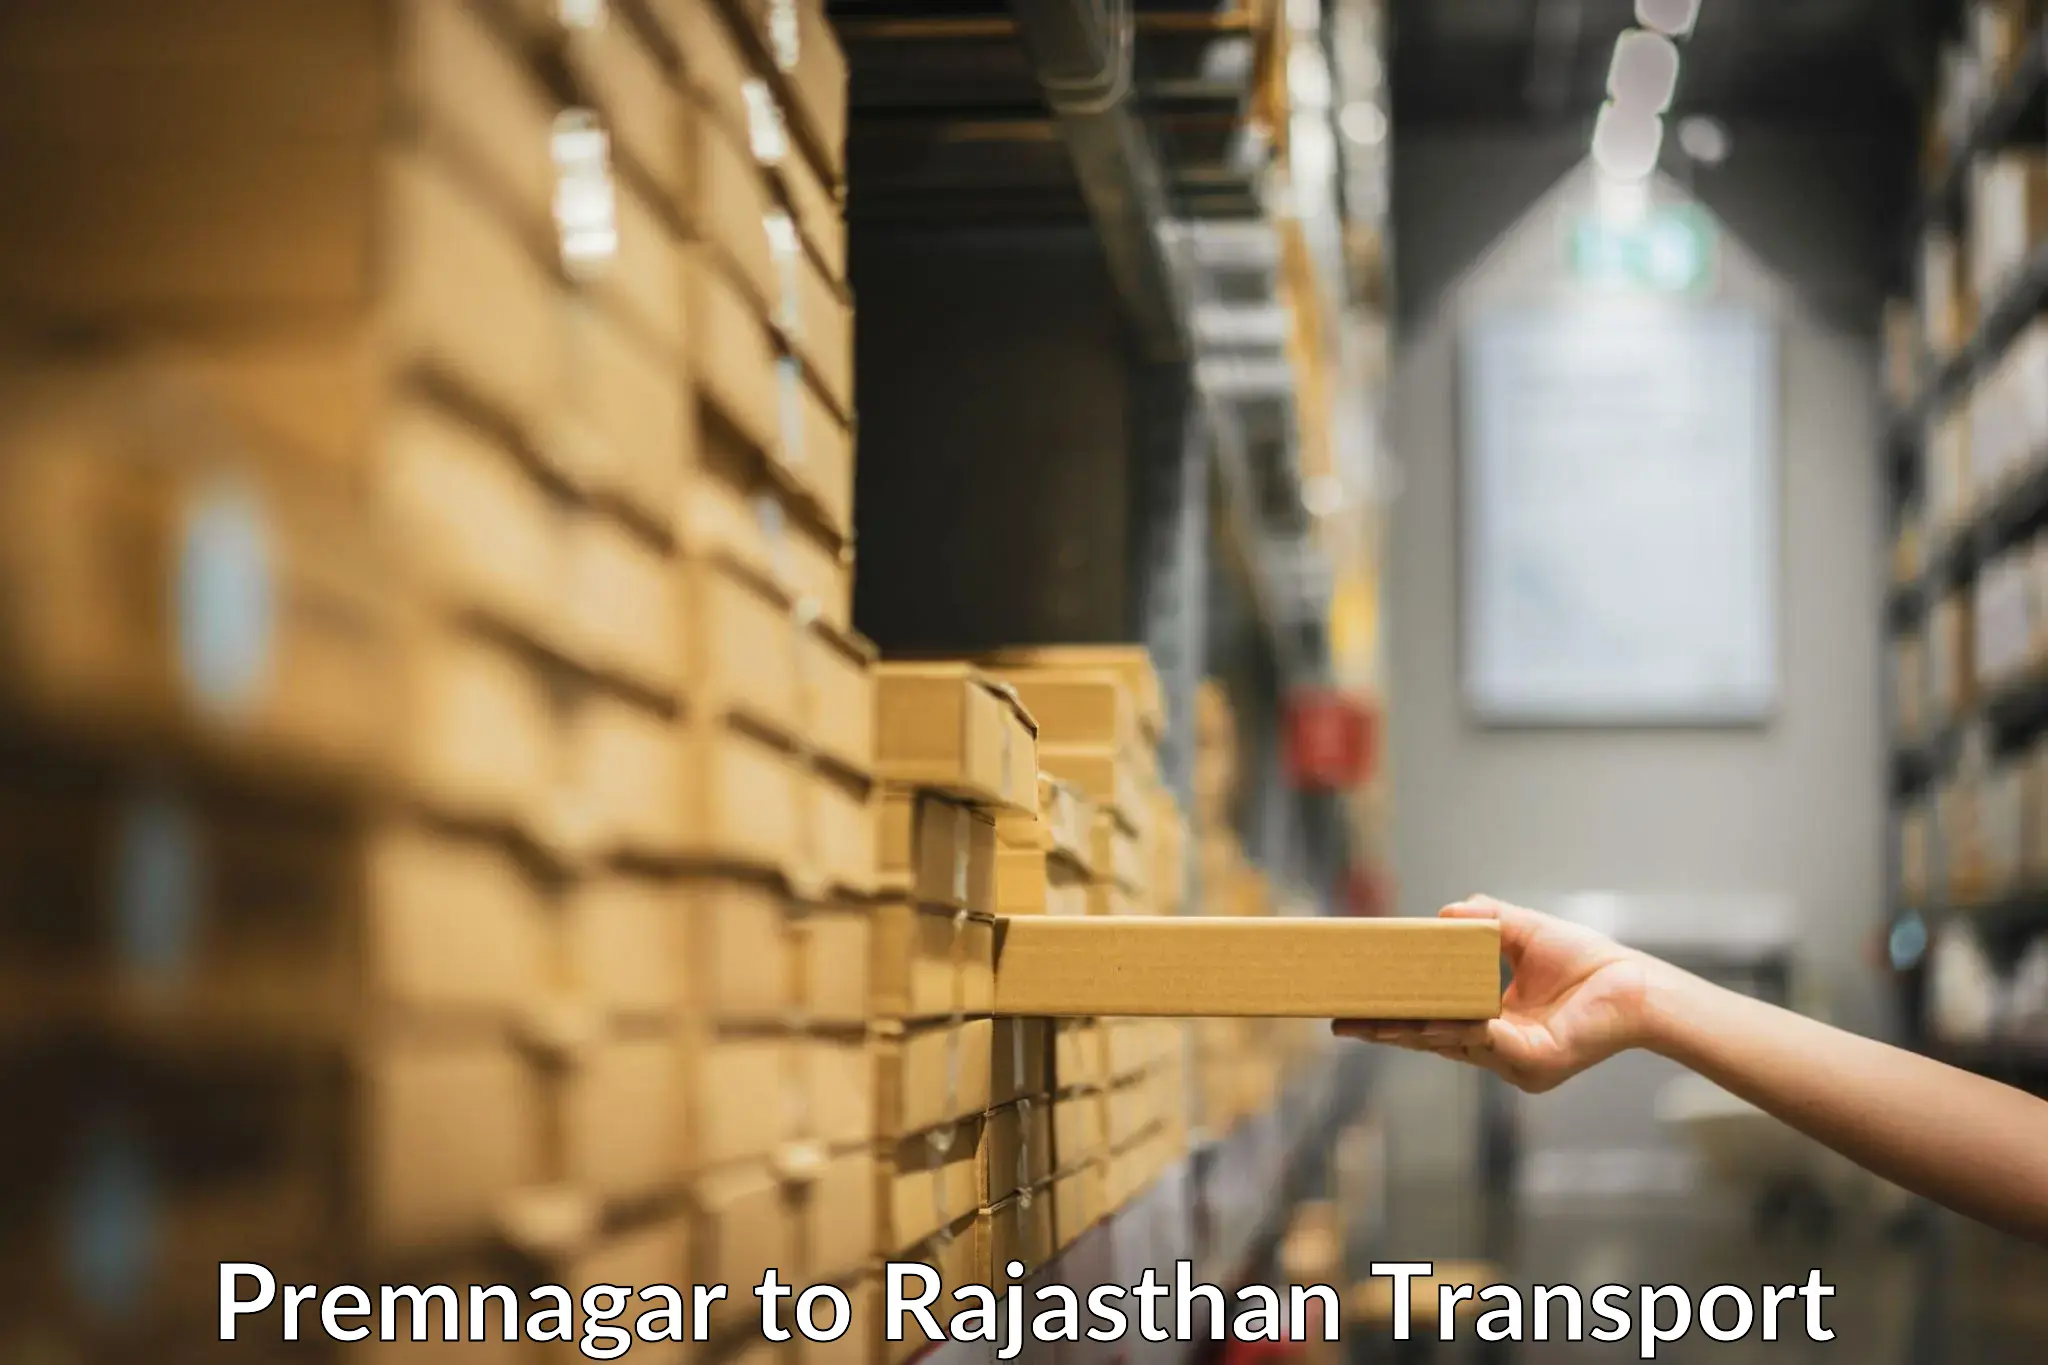 Furniture transport service Premnagar to Udaipur